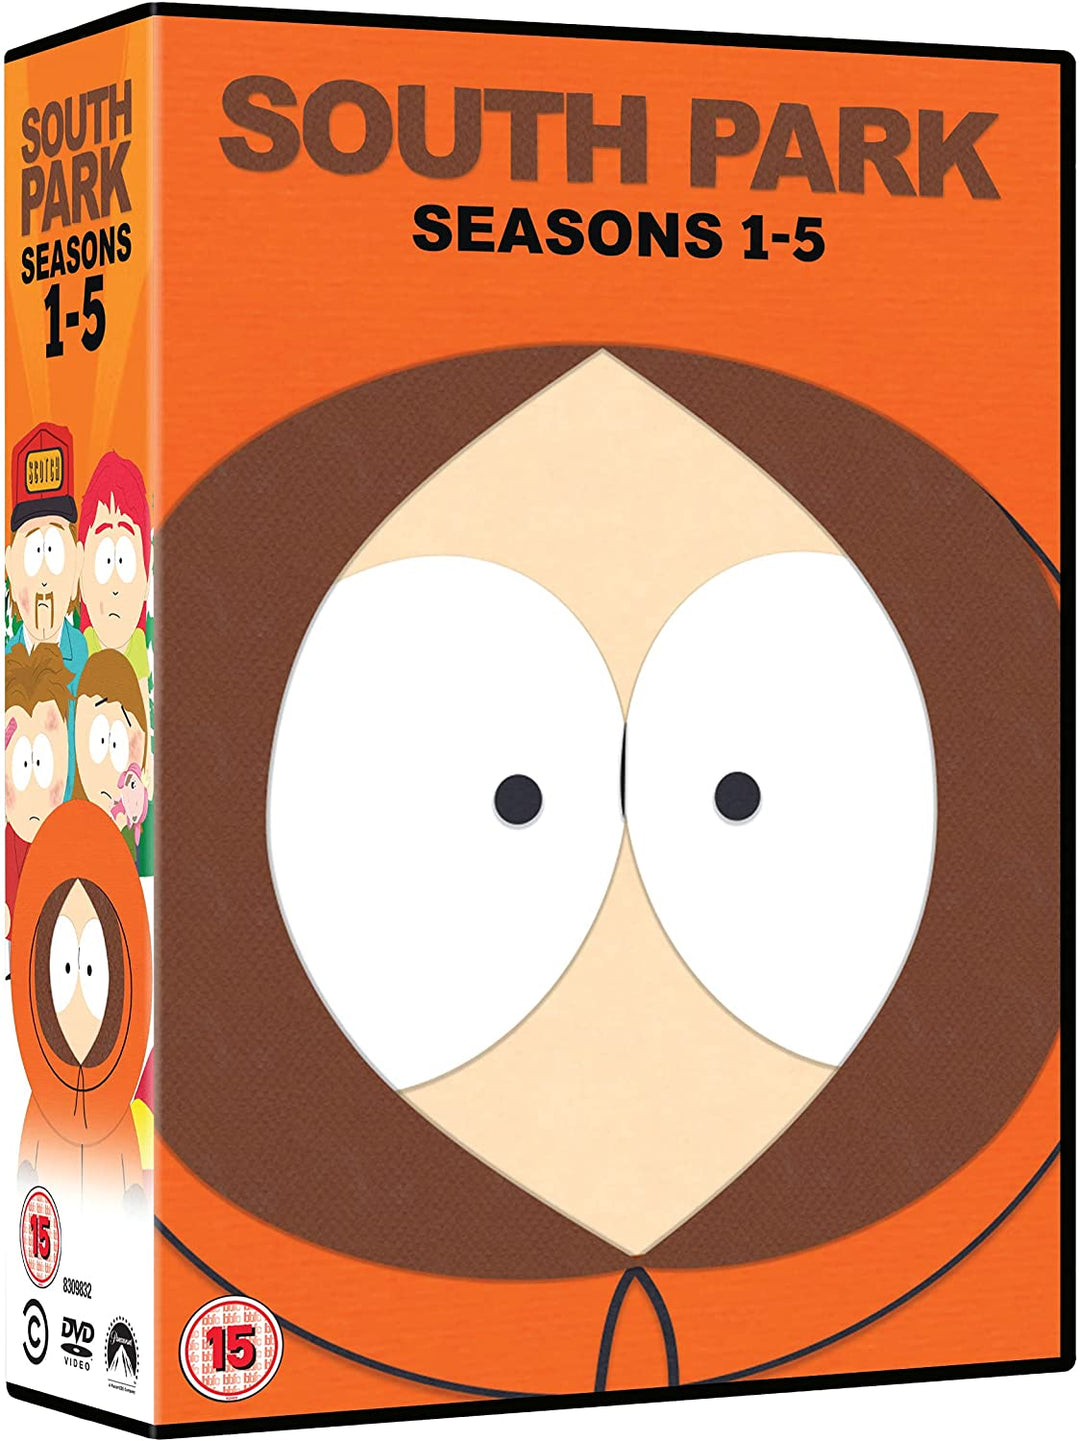 South Park: Seasons 1-5 - Comedy [DVD]